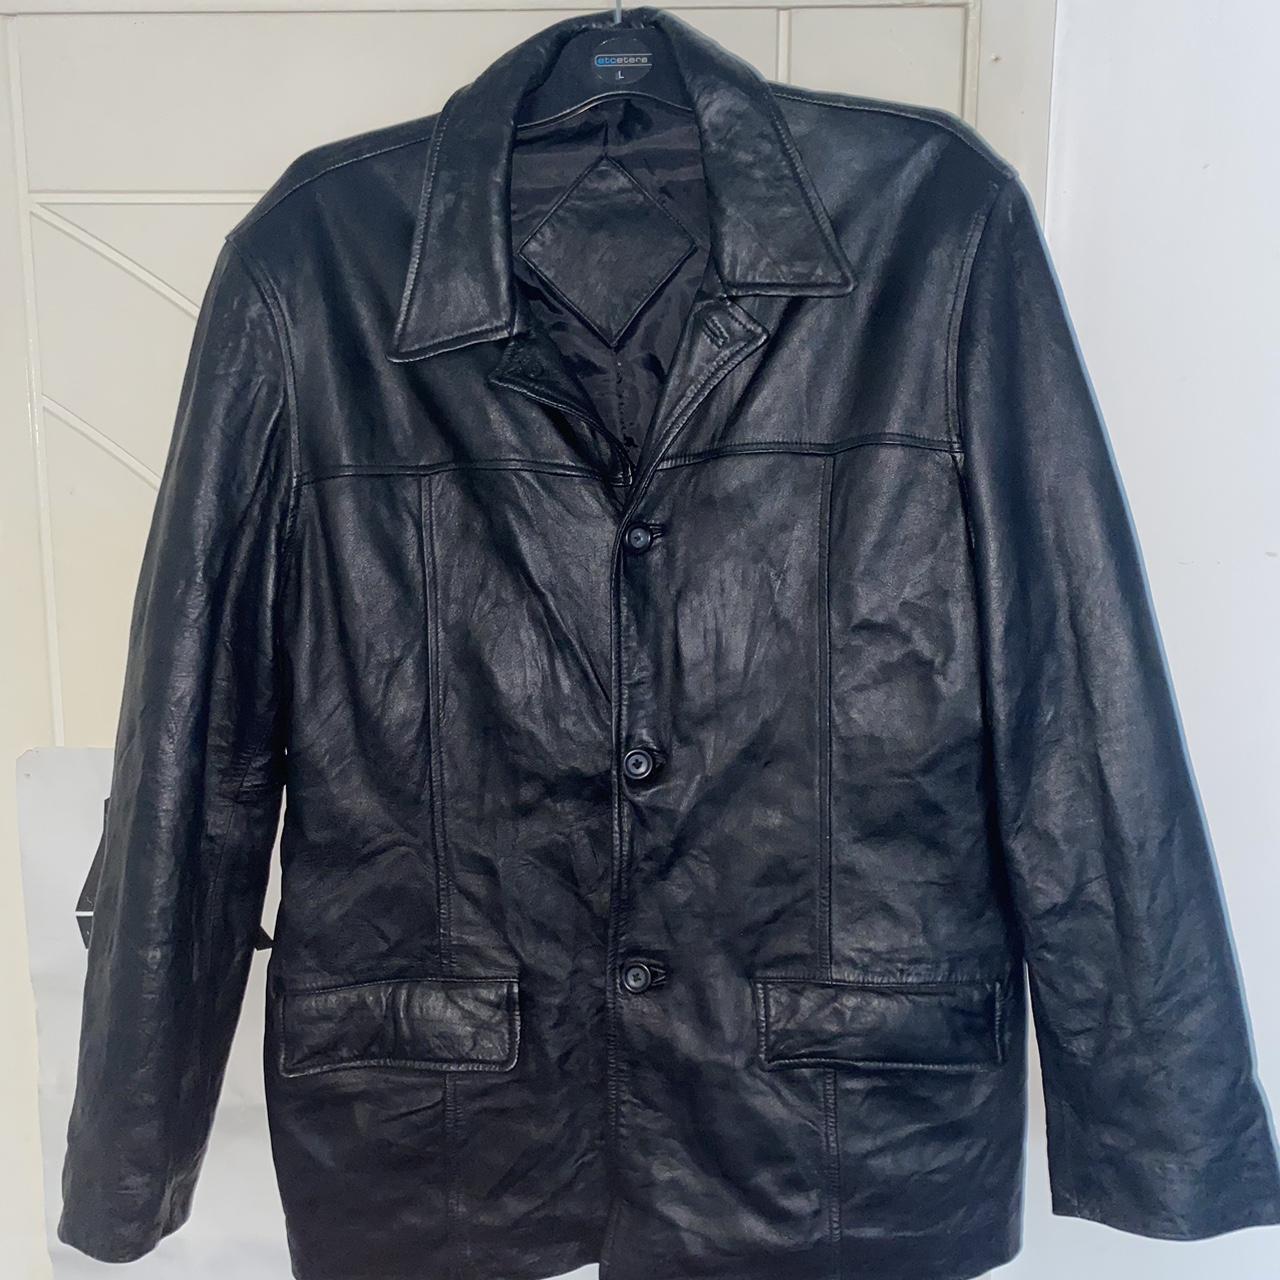 Men's vintage 60s/70s leather jacket, - Depop